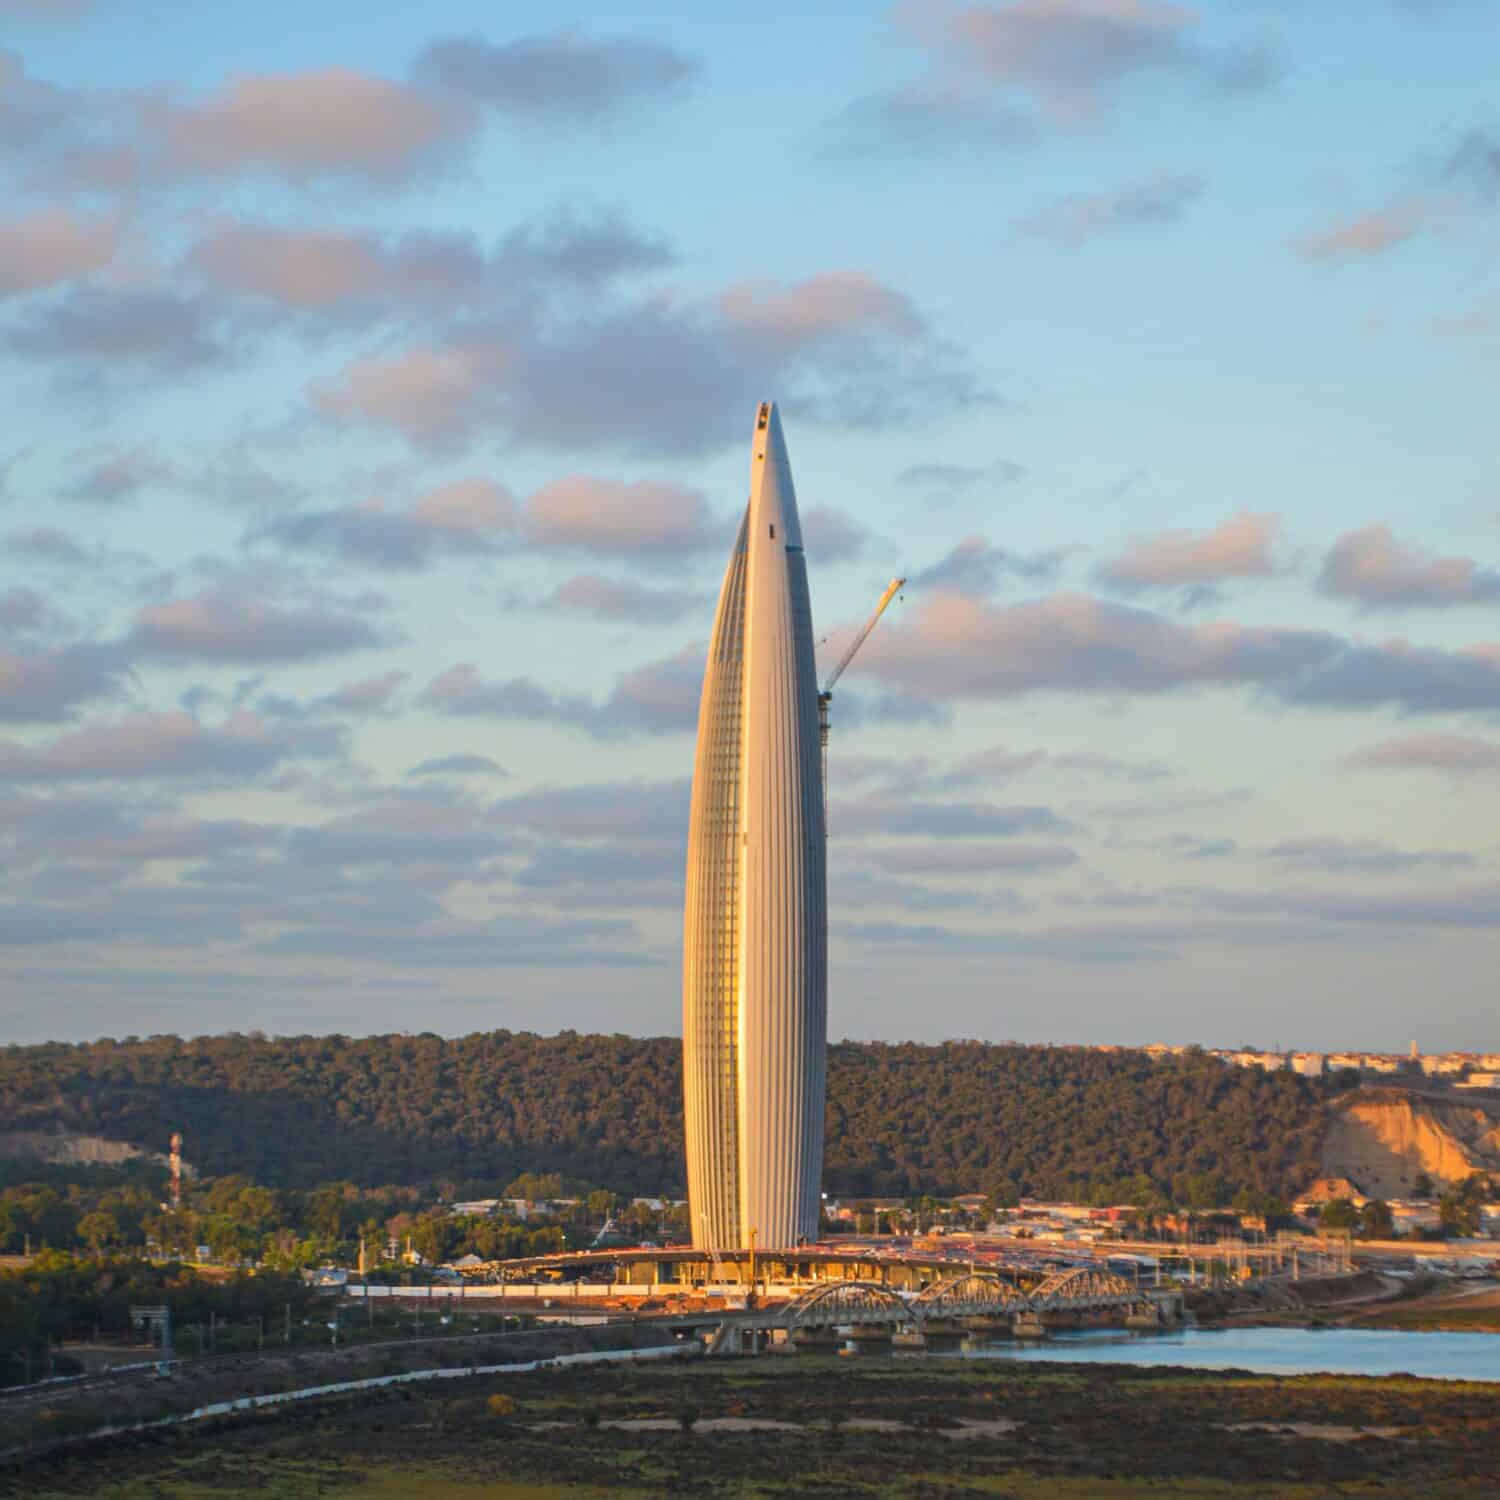 the futuristic Mohammed VI Tower in Salè in 2023.